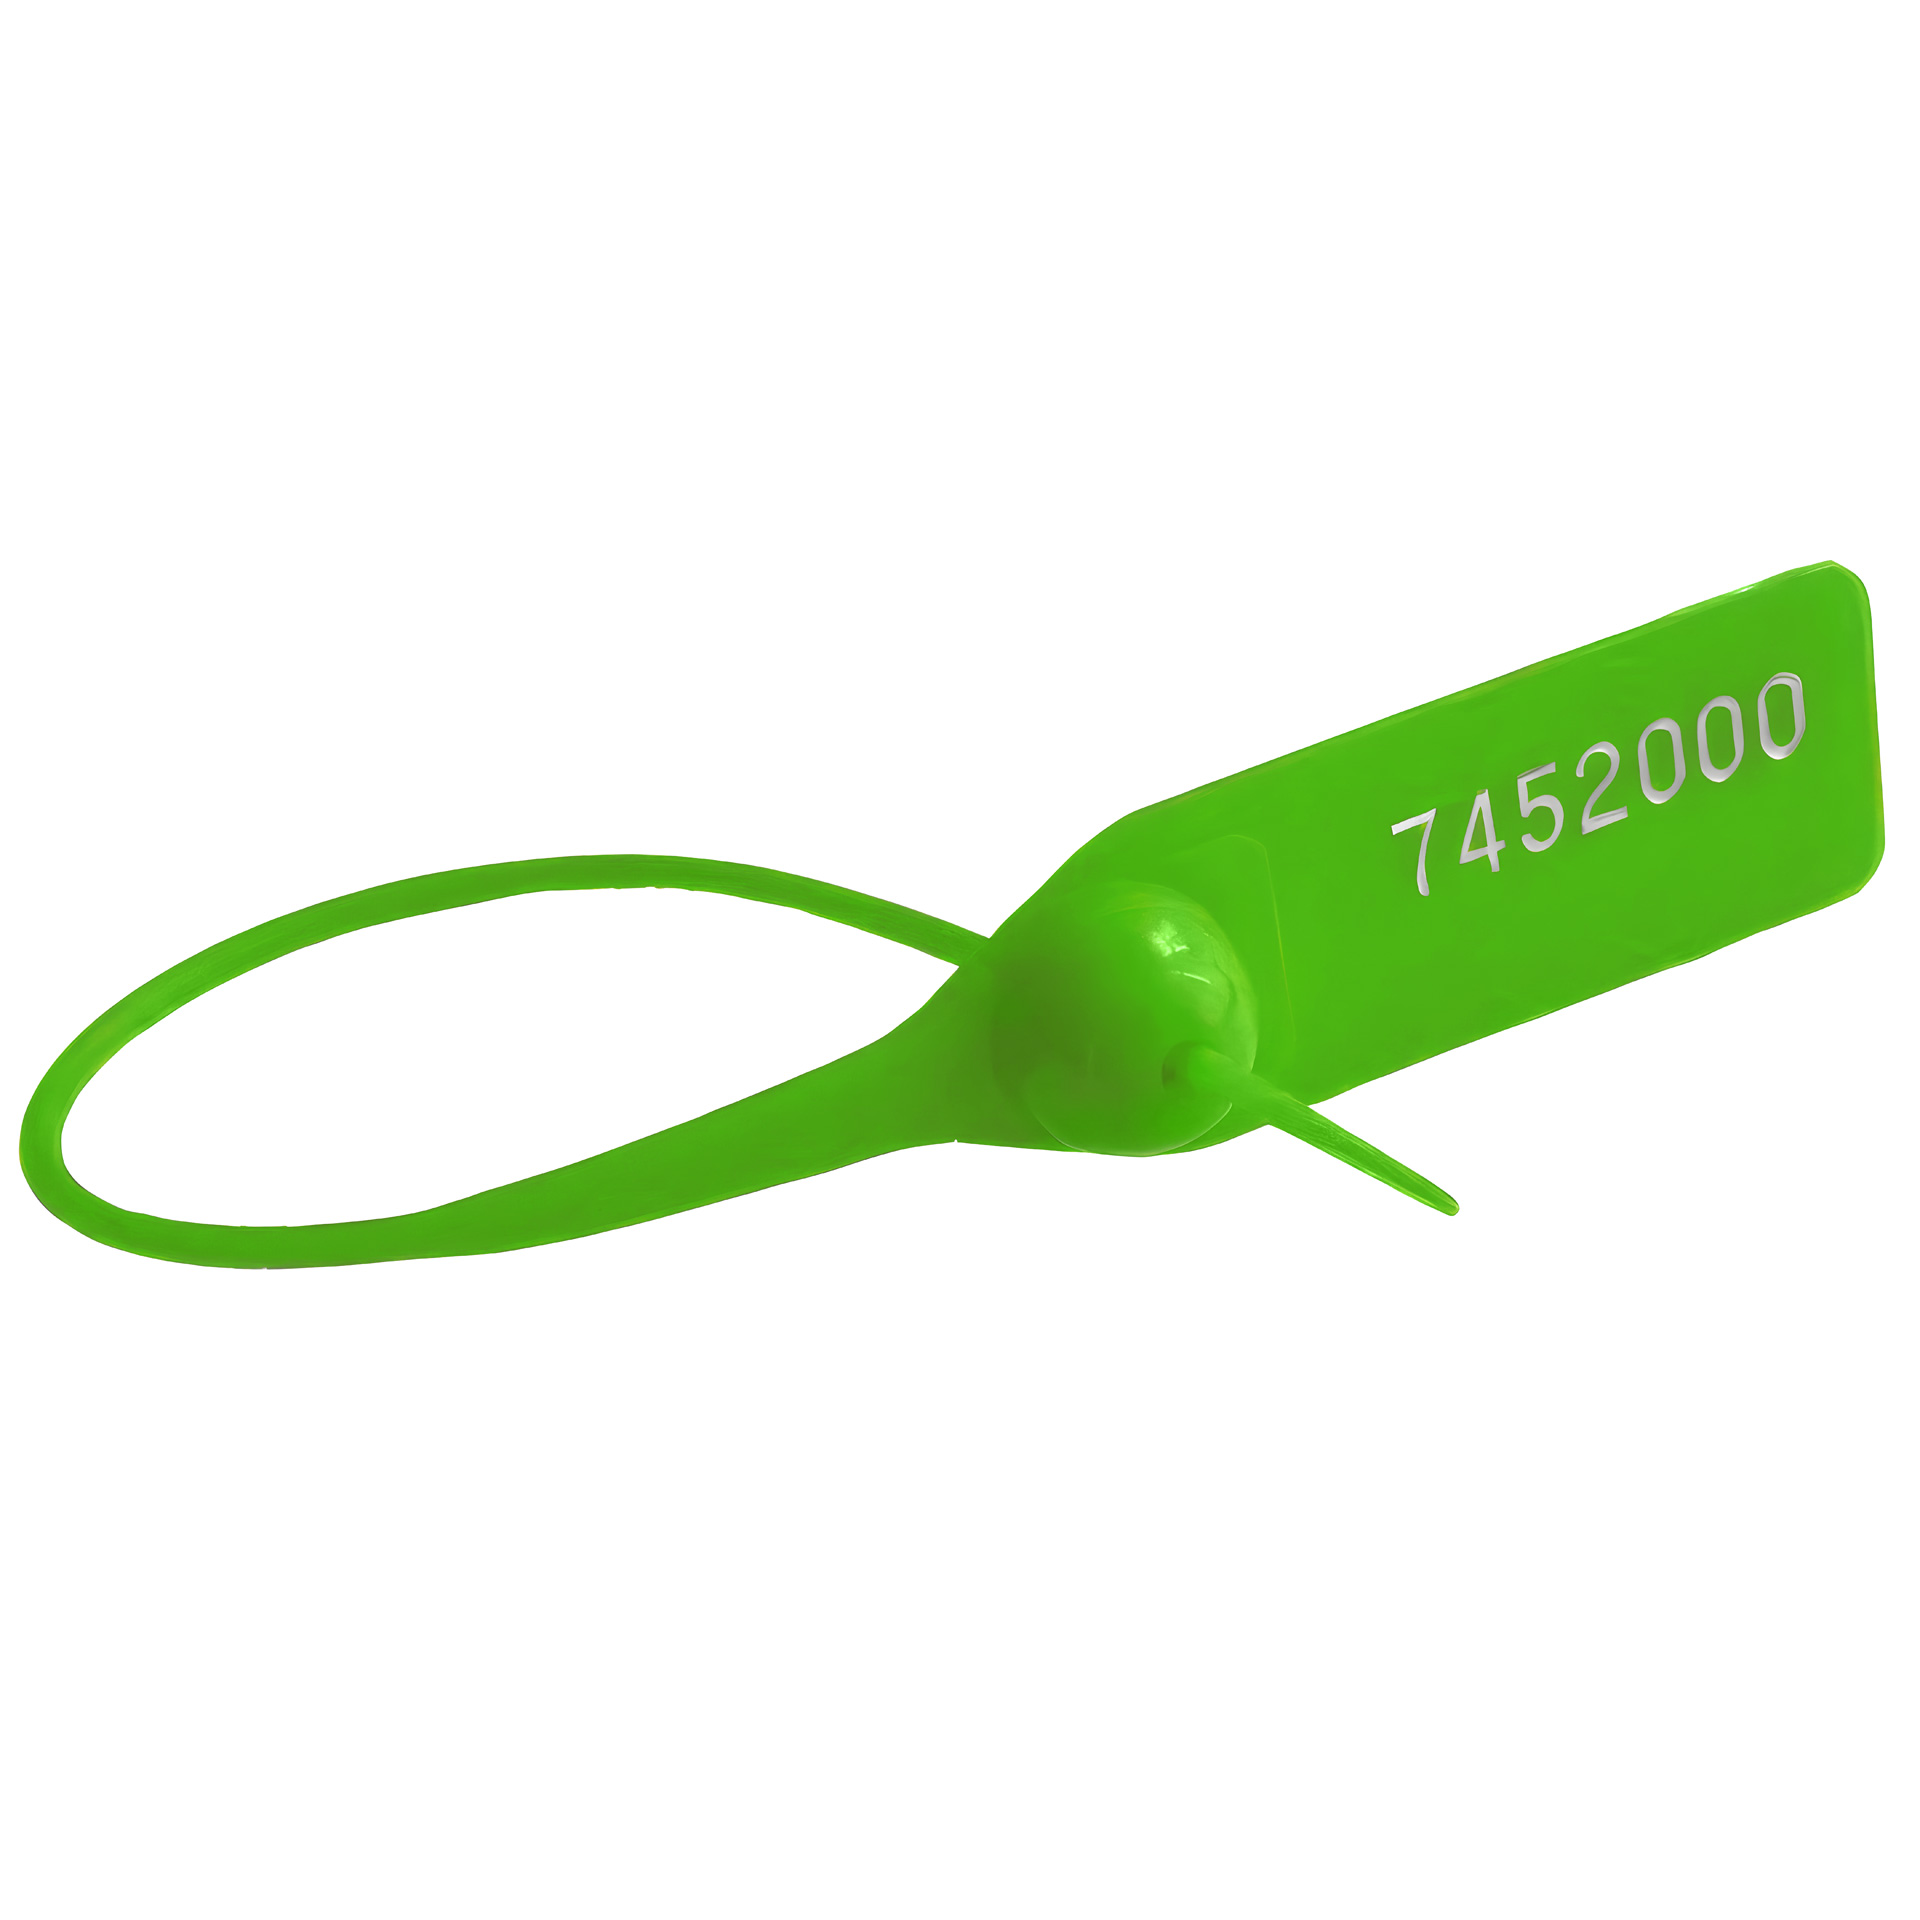 Пломба номерная пластиковая ОСА-150 зеленый оптом в наличии, на заказ